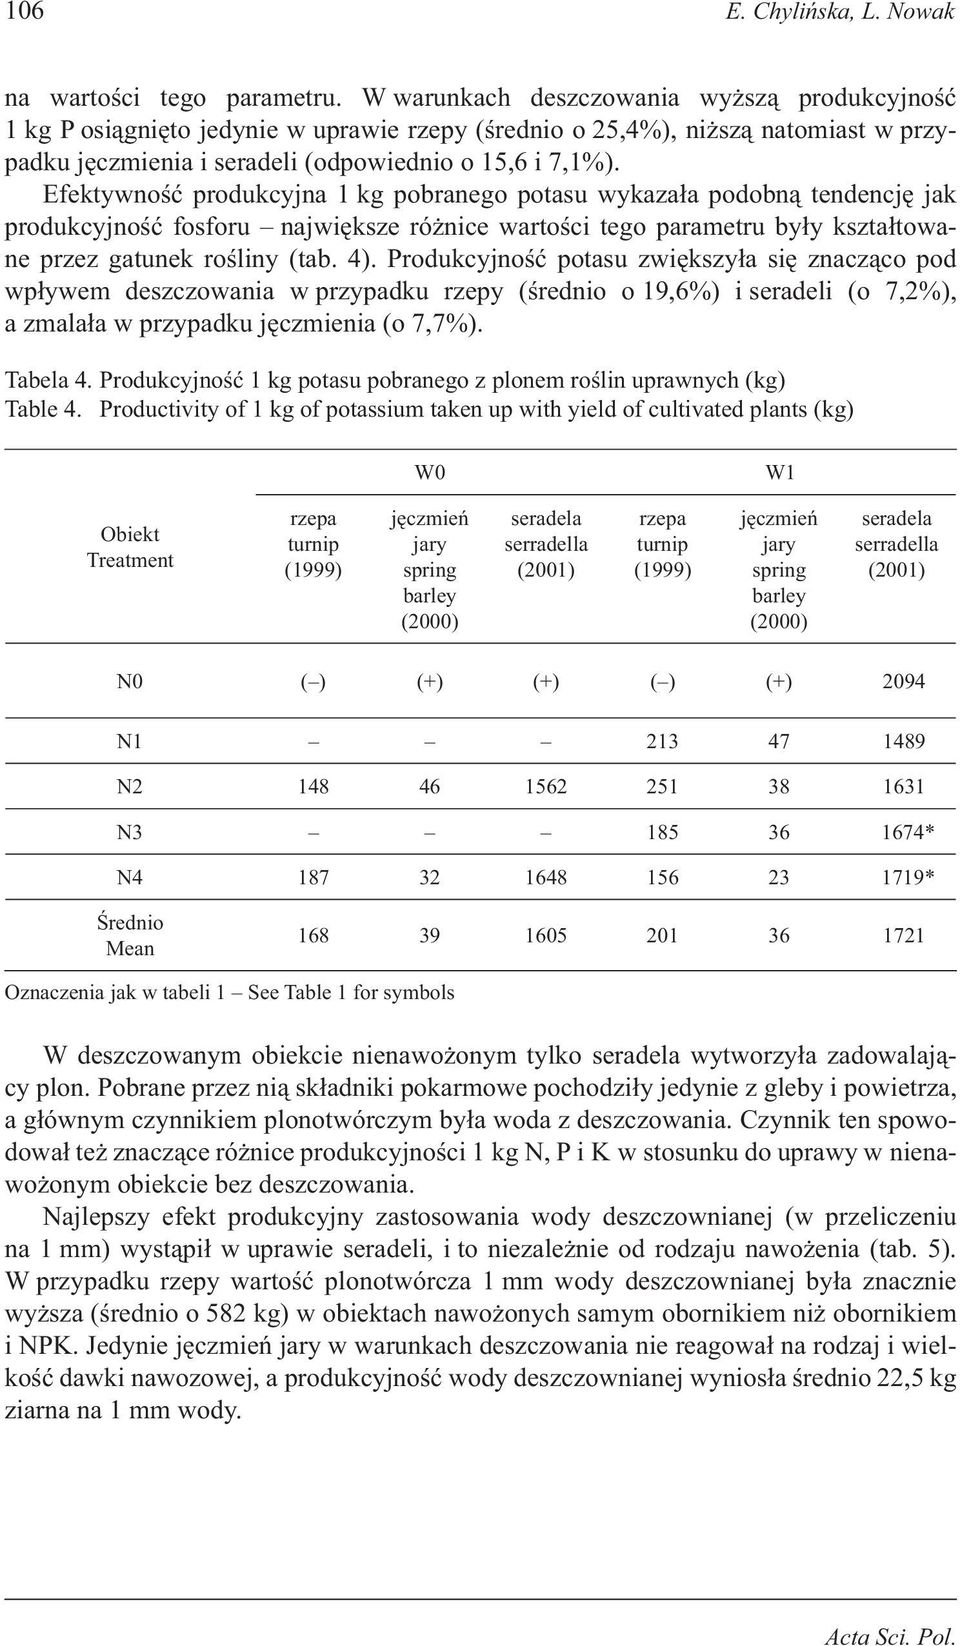 Efektywność produkcyjna 1 kg pobranego potasu wykazała podobną tendencję jak produkcyjność fosforu największe różnice wartości tego parametru były kształtowane przez gatunek rośliny (tab. 4).